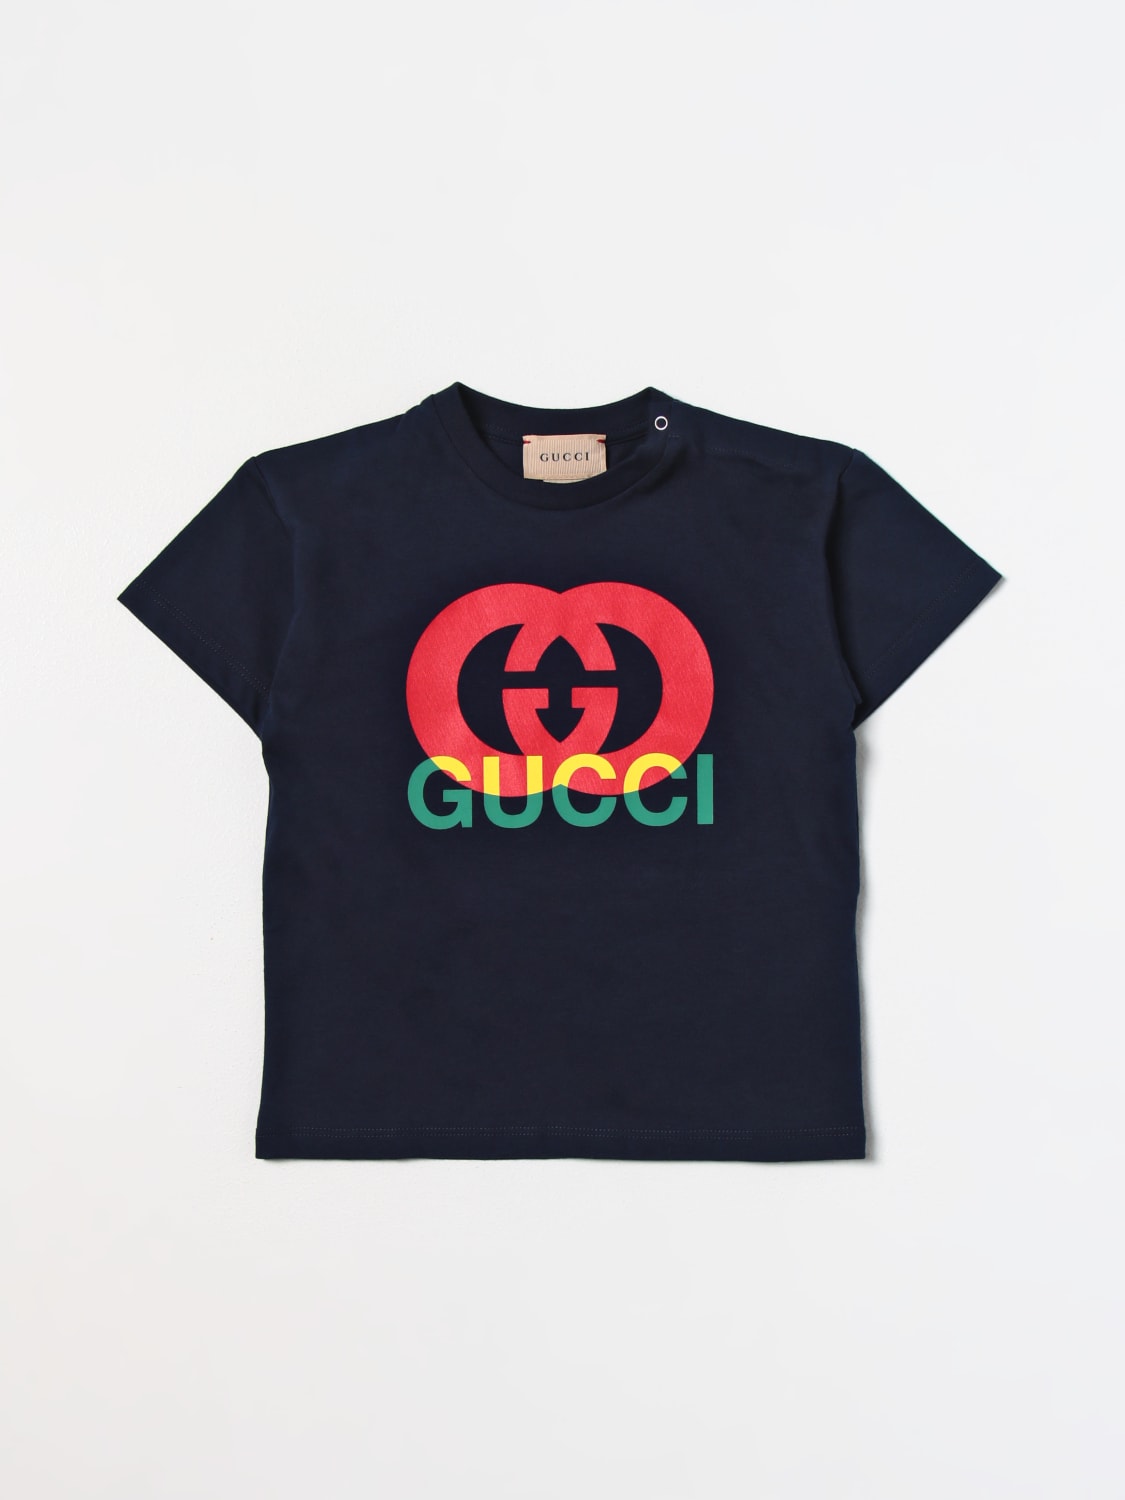 希望者のみラッピング無料】 GUCCItシャツ | www.oitachuorc.com